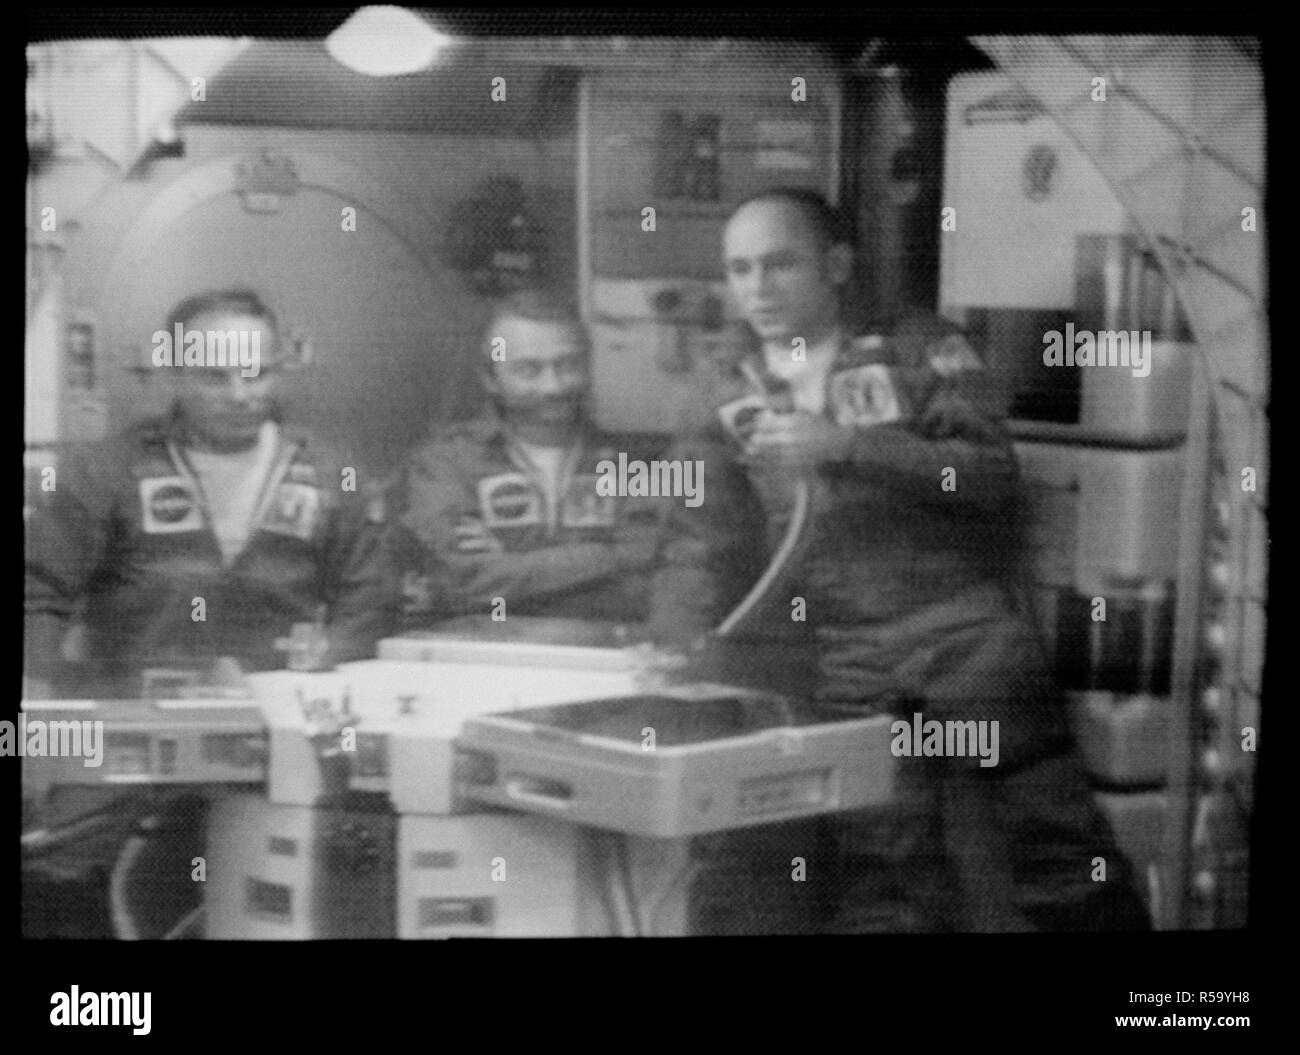 (21 Sett. 1973) --- astronauta Alan L. Fagiolo, diritto, Skylab 3 commander, risponde a una domanda durante la sett. 21, 1973 conferenza stampa dal Skylab una stazione spaziale in orbita intorno alla terra. Foto Stock